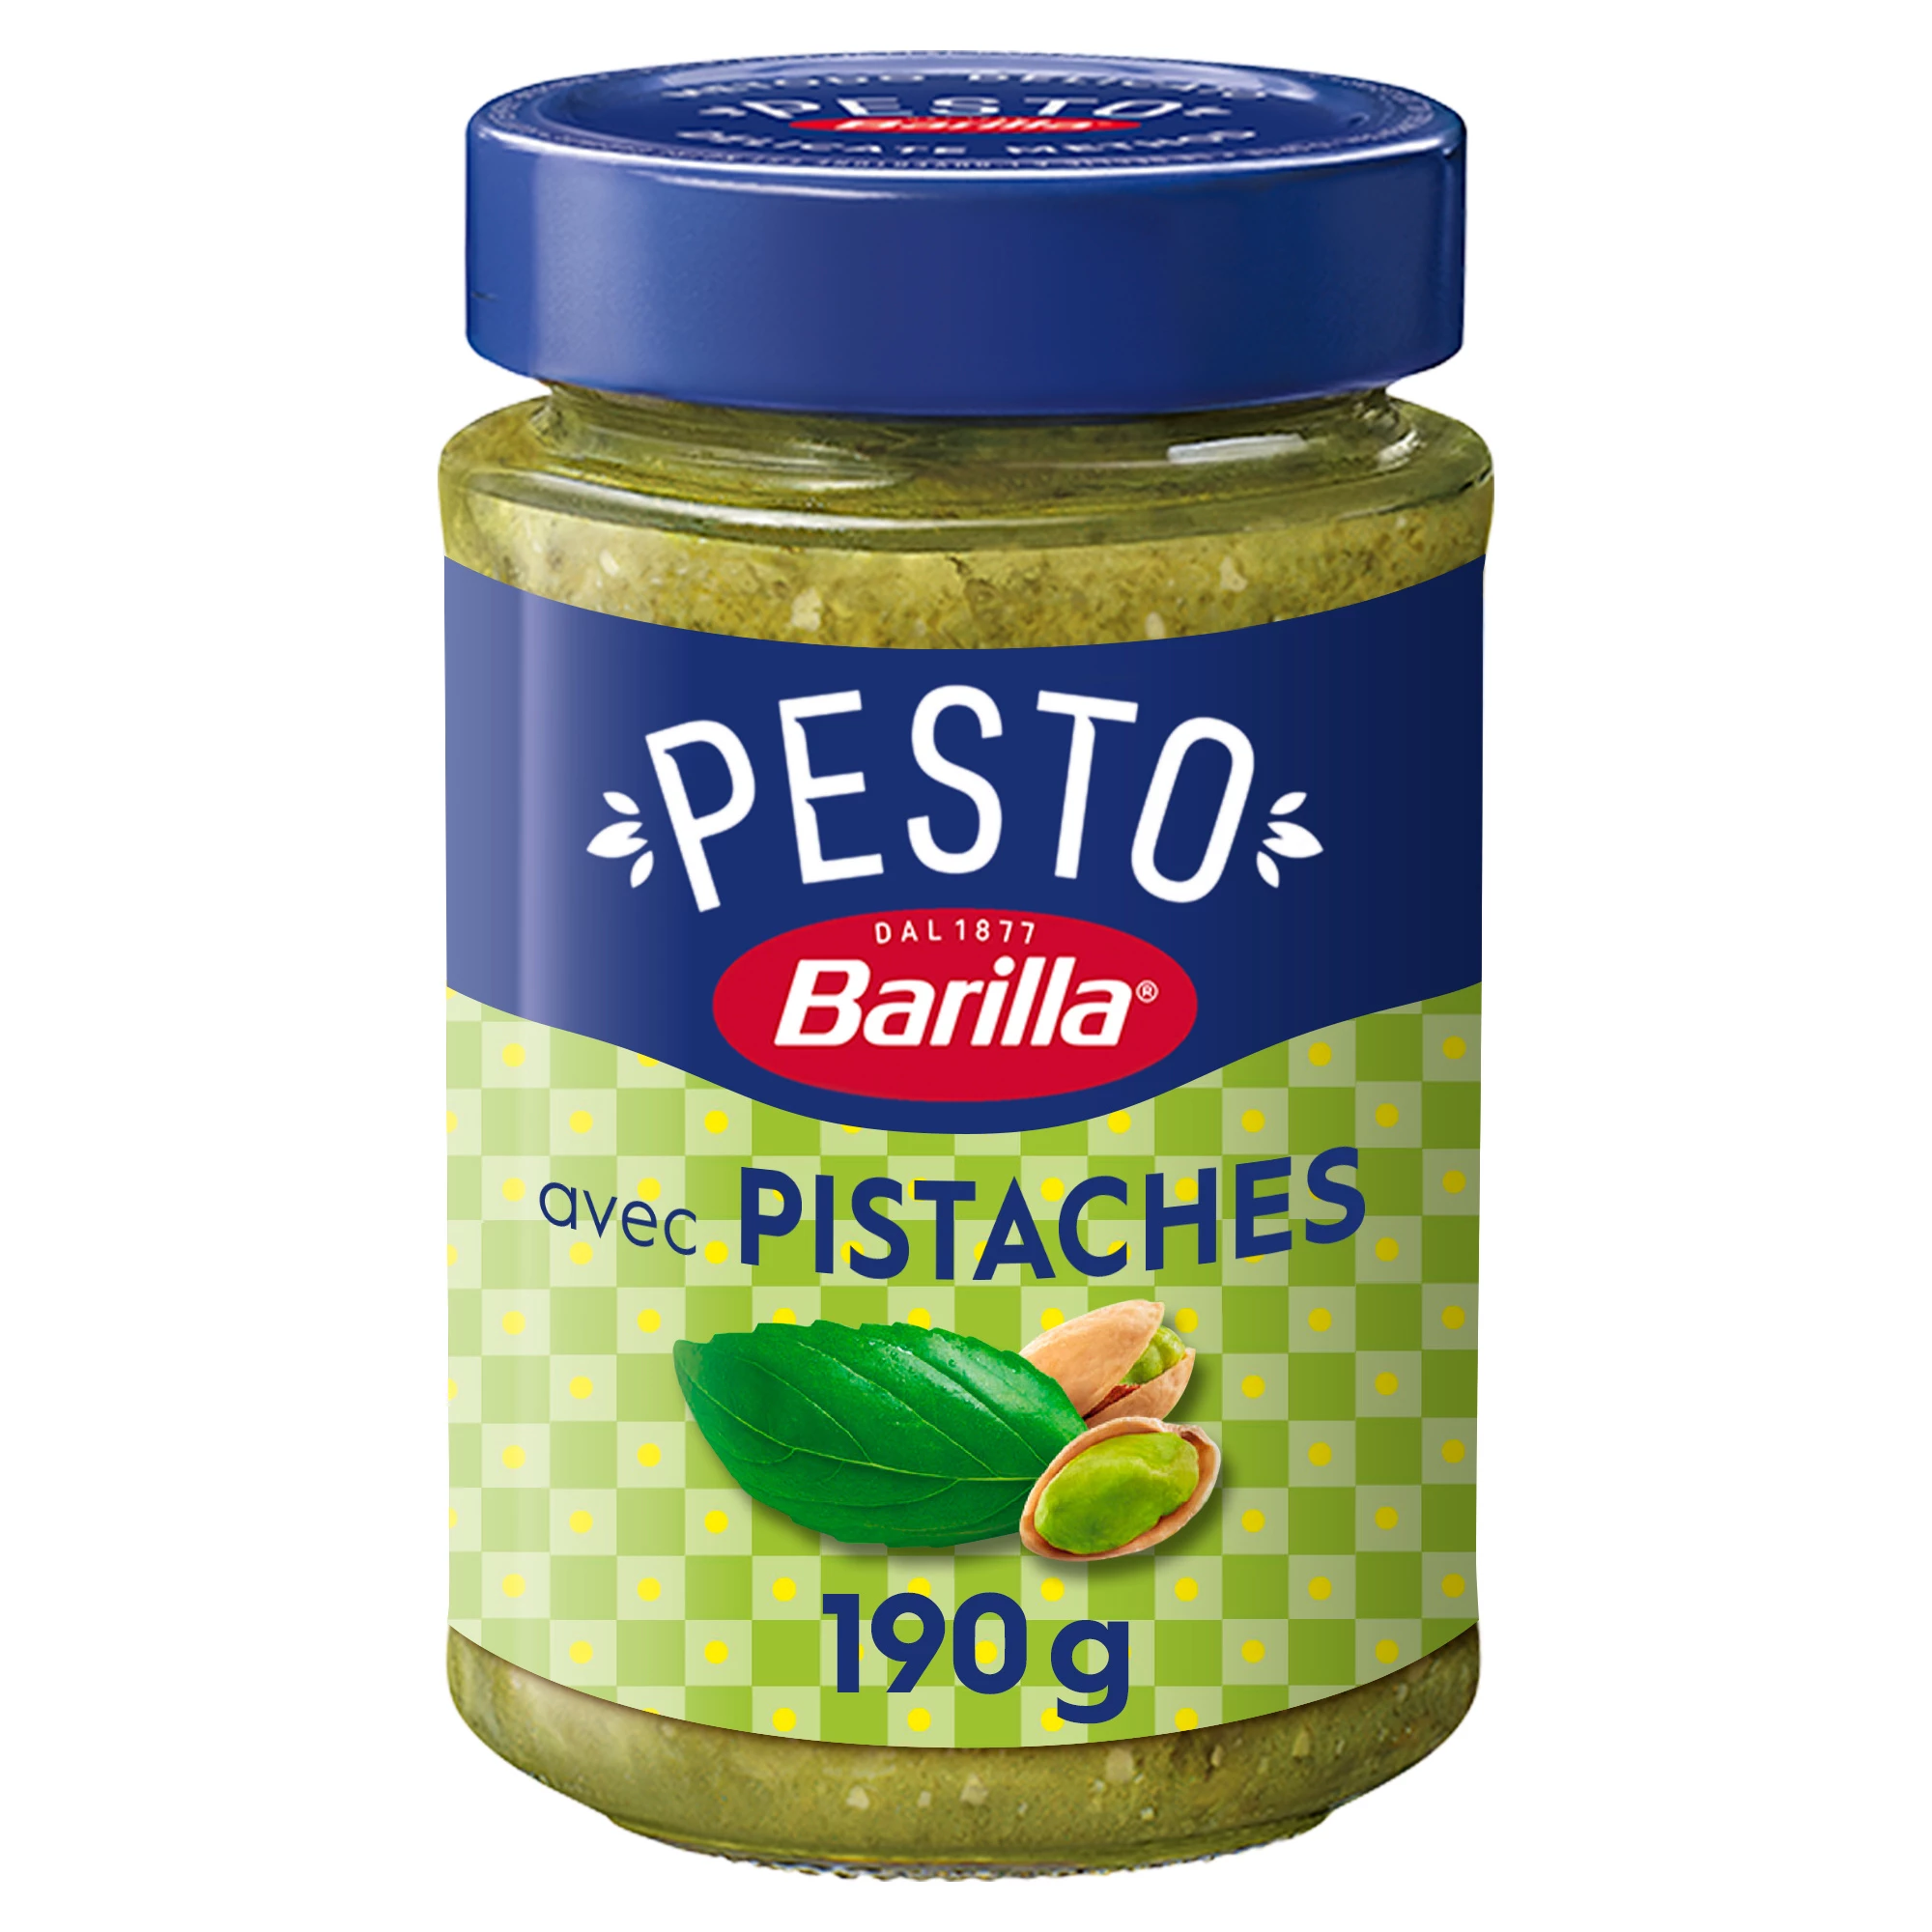 Pesto Di Pistacchio E Basilico, 190g -  BARILLA